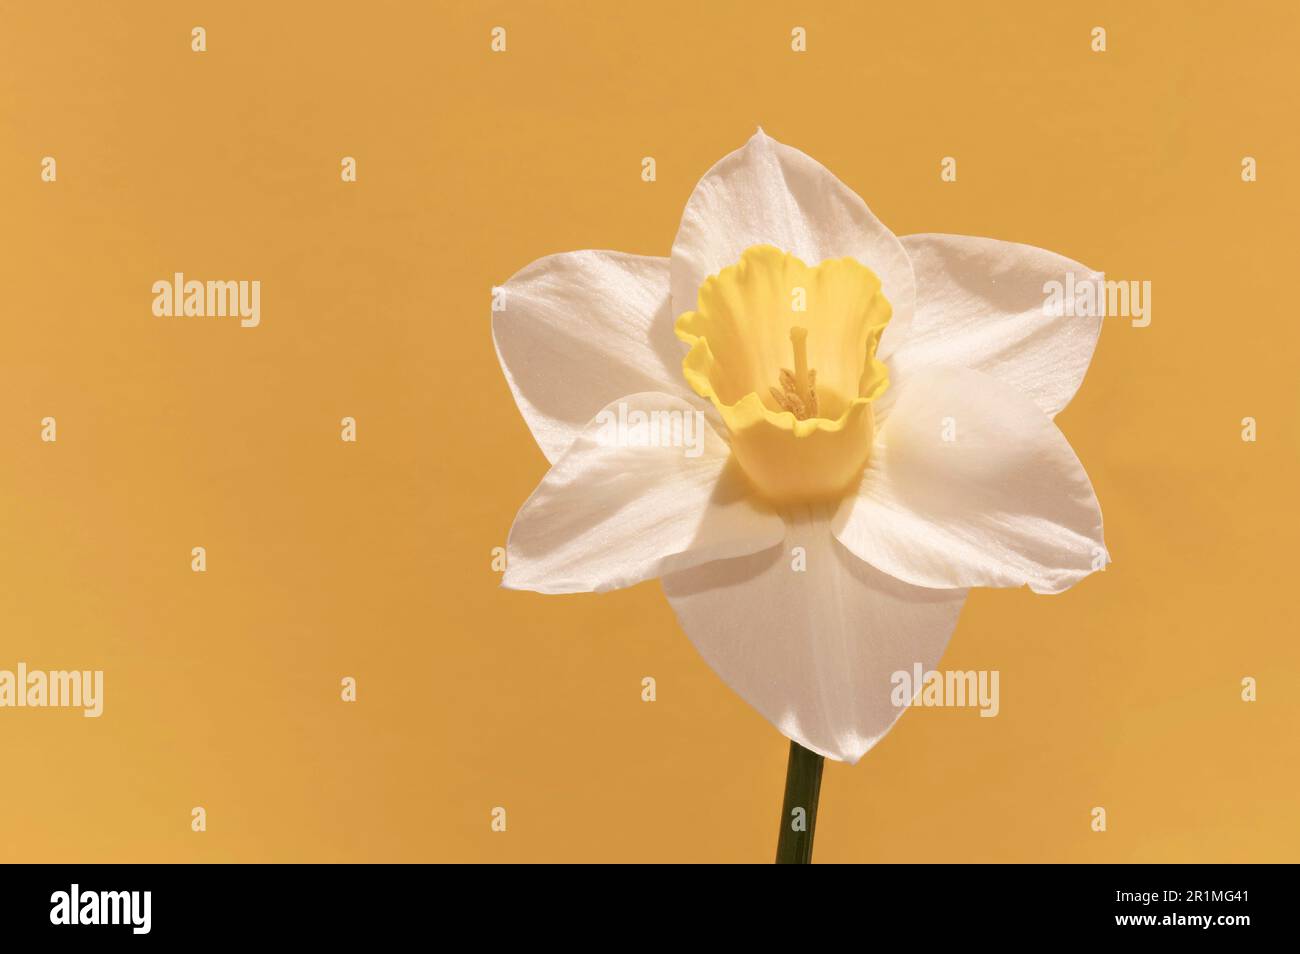 Il trattamento tono su tono di questo daffodil ricorda i colori caldi e tenui della primavera e dell'estate. Foto Stock